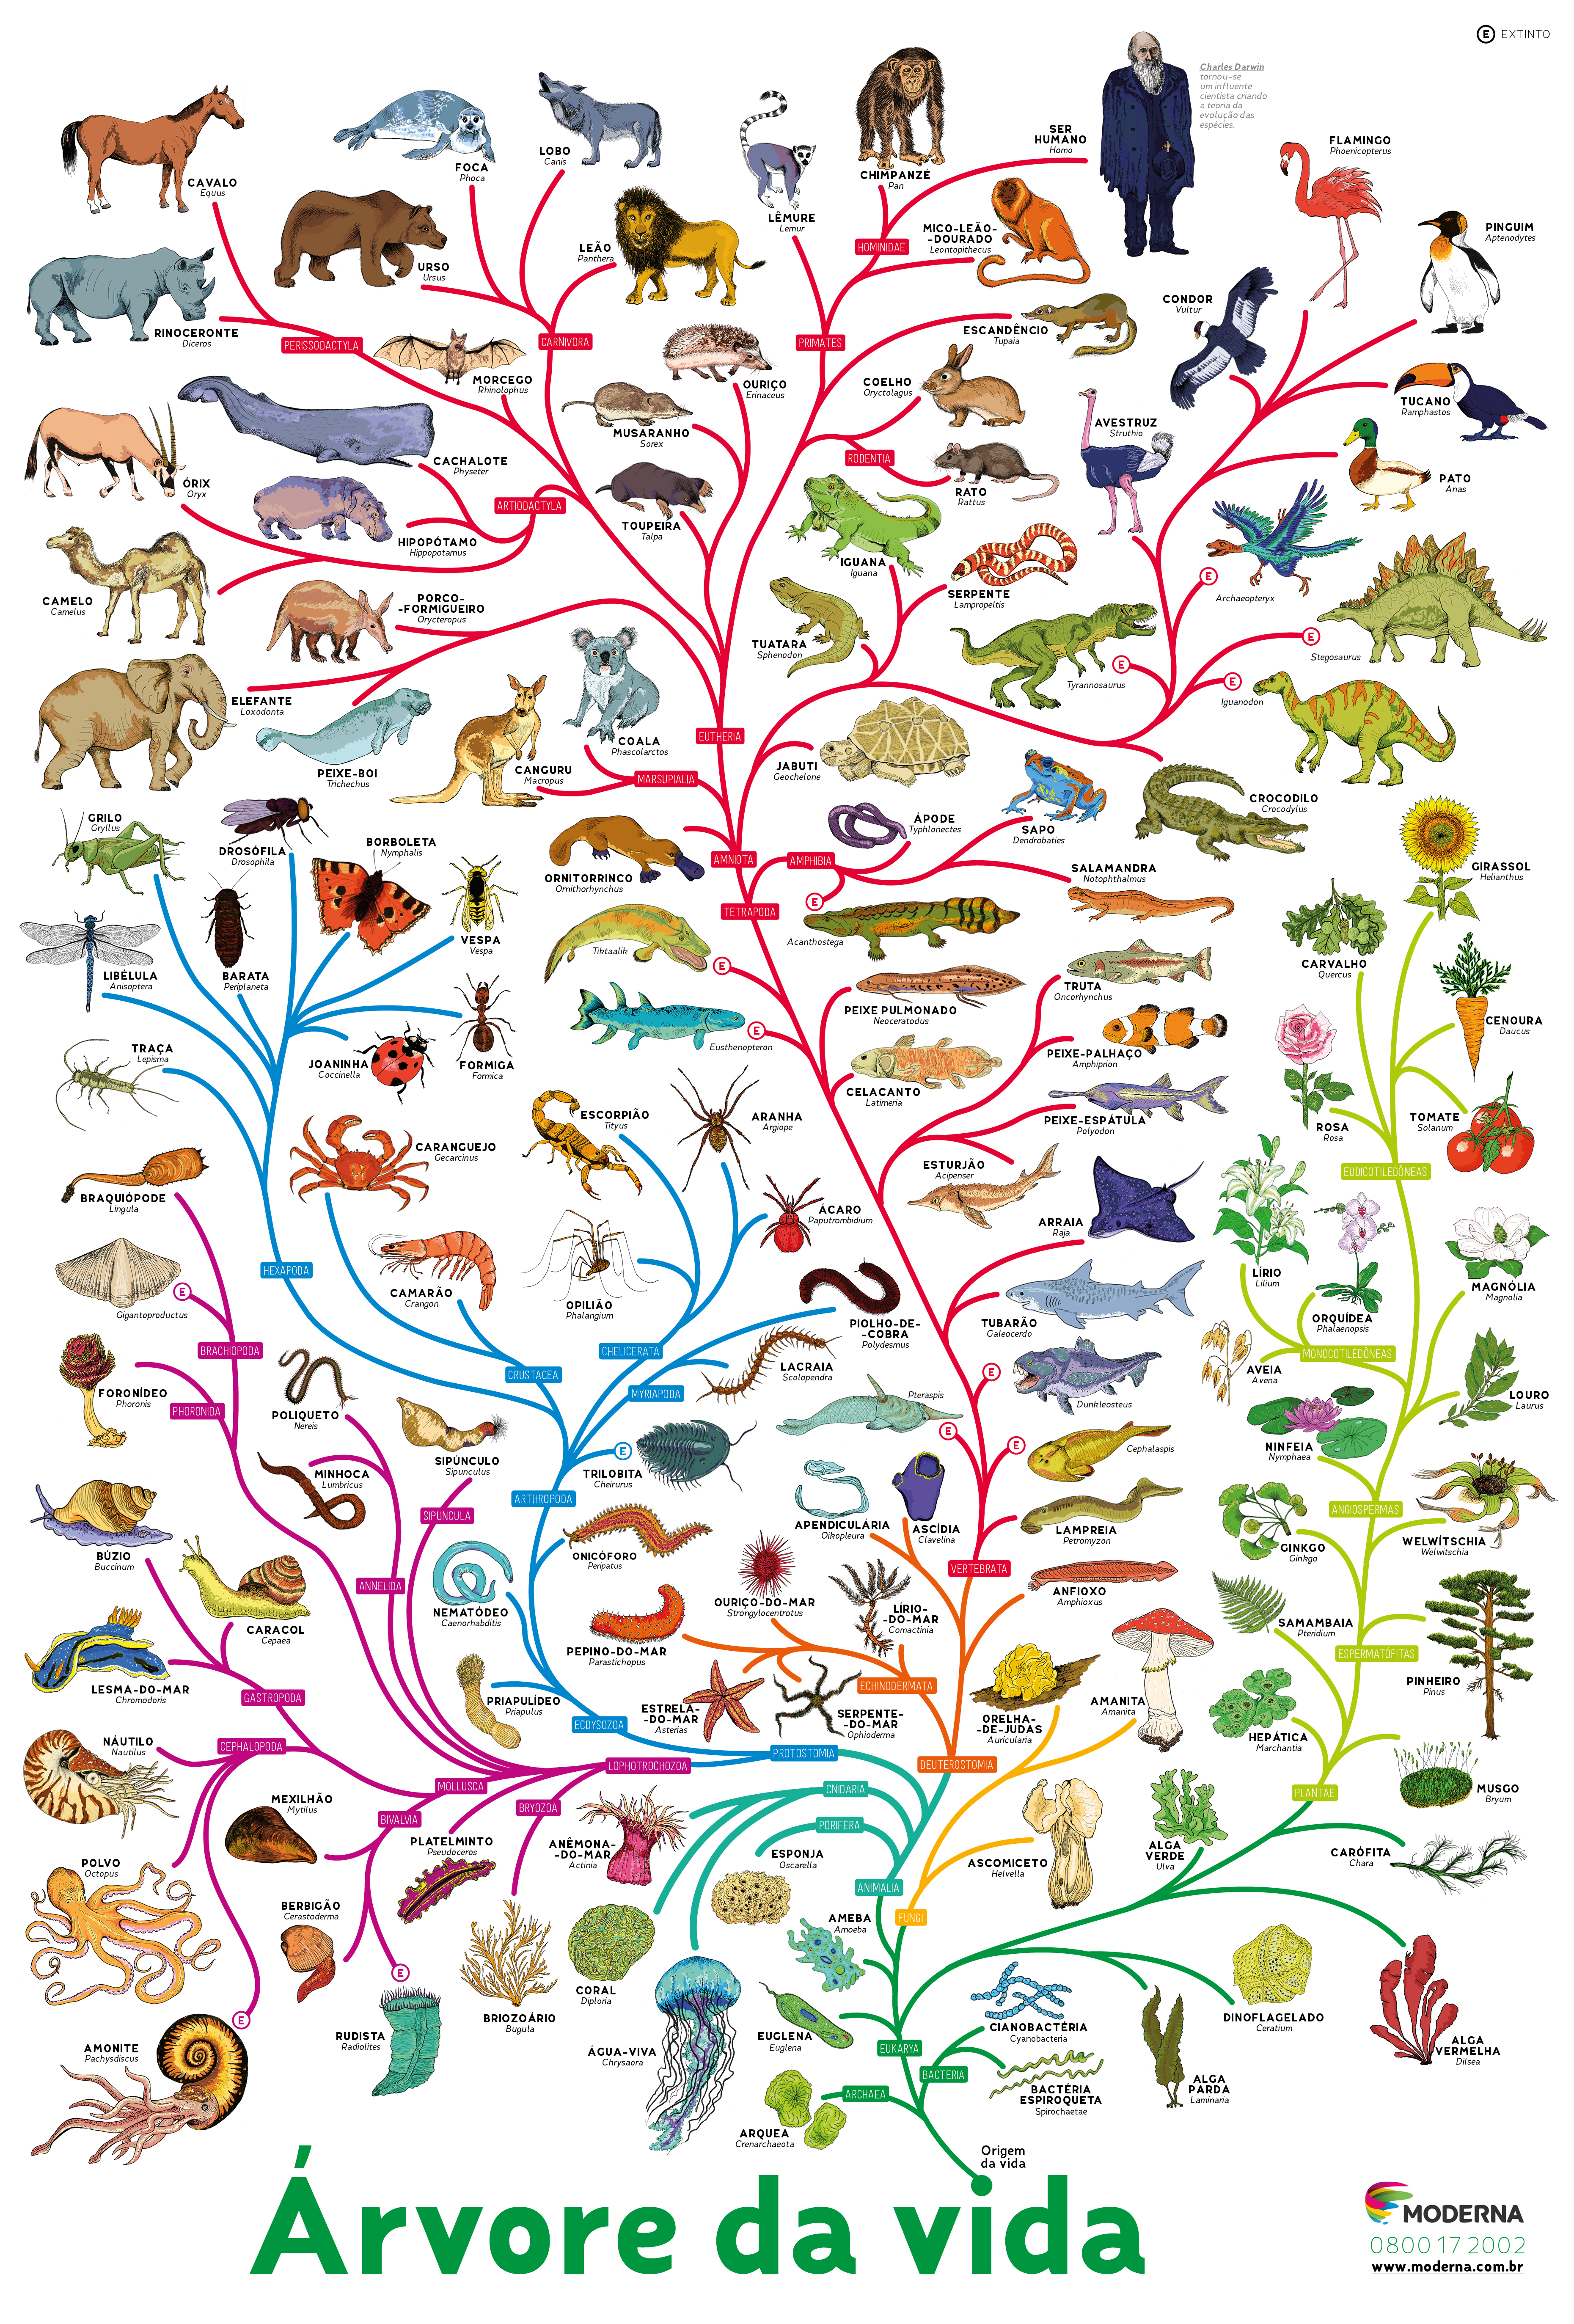 Эволюция древа 178. Эволюционное дерево жизни Чарльза Дарвина. Эволюционное Древо развития животных. Филогенетическое дерево эволюции.